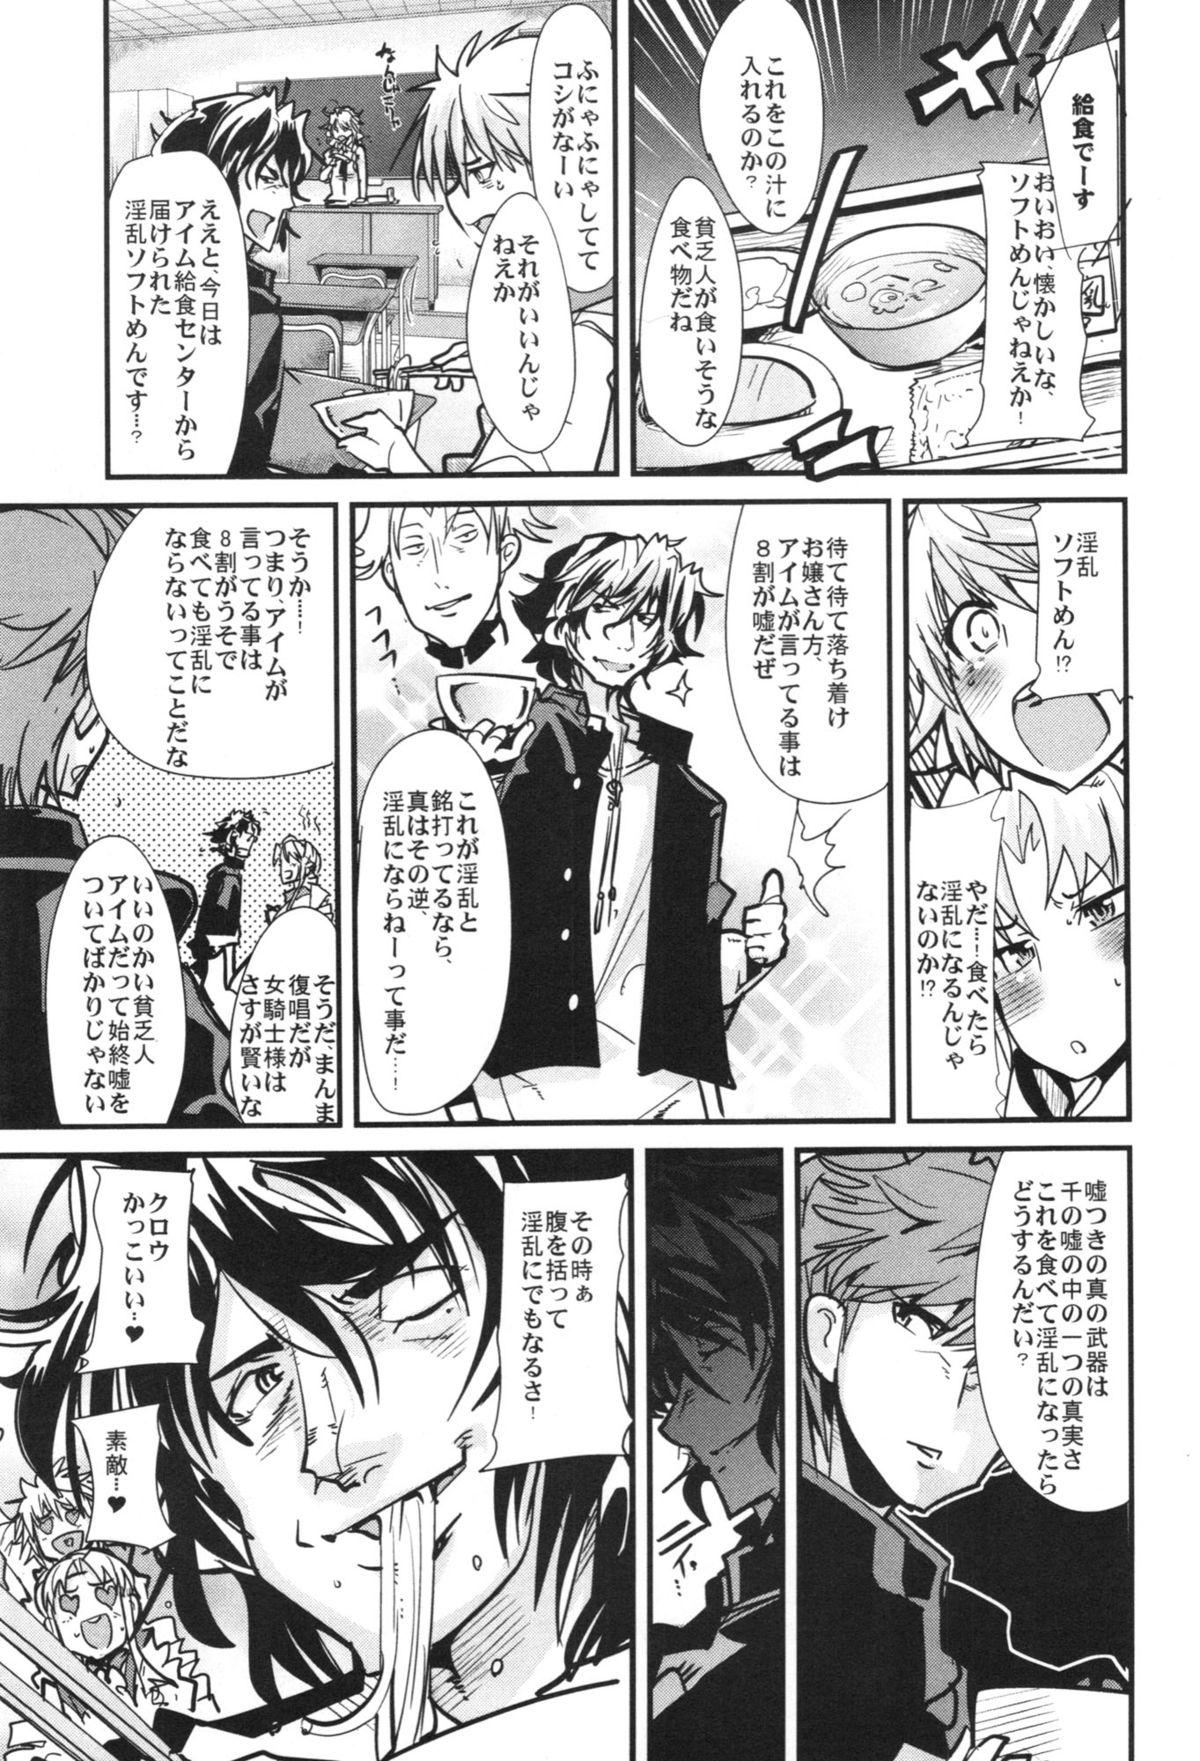 Gaygroup Dainiji Boku no Watashi no Super Bobobbo Taisen ZZ - Cio Mar Mari 3 Oppai Kessen hen - Super robot wars Teasing - Page 9